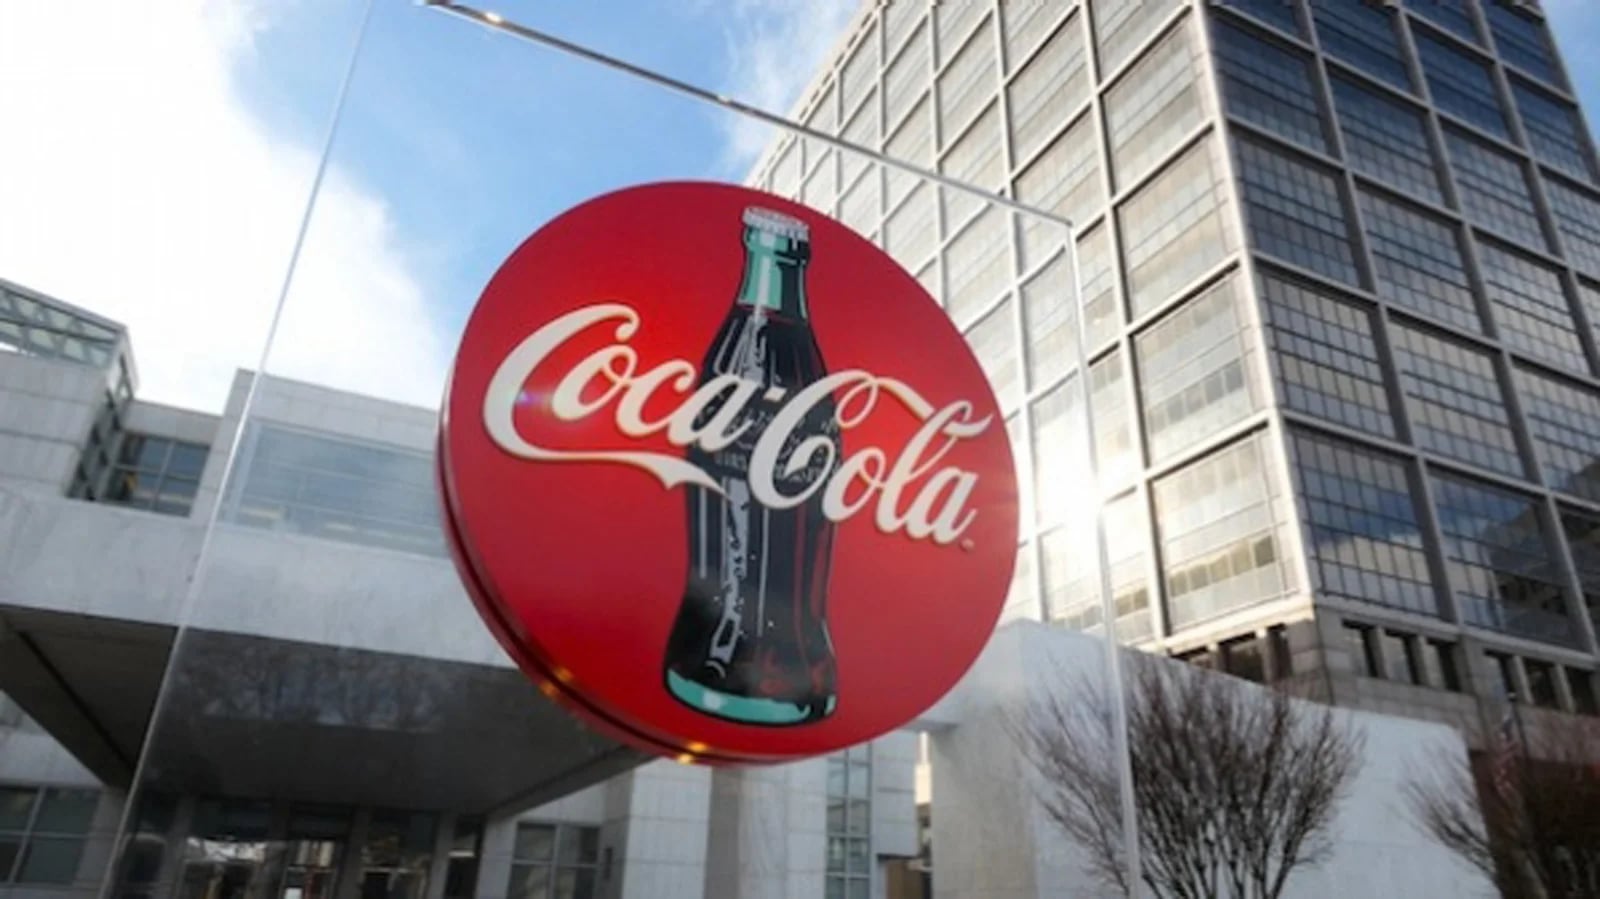 (The Coca-Cola Company)